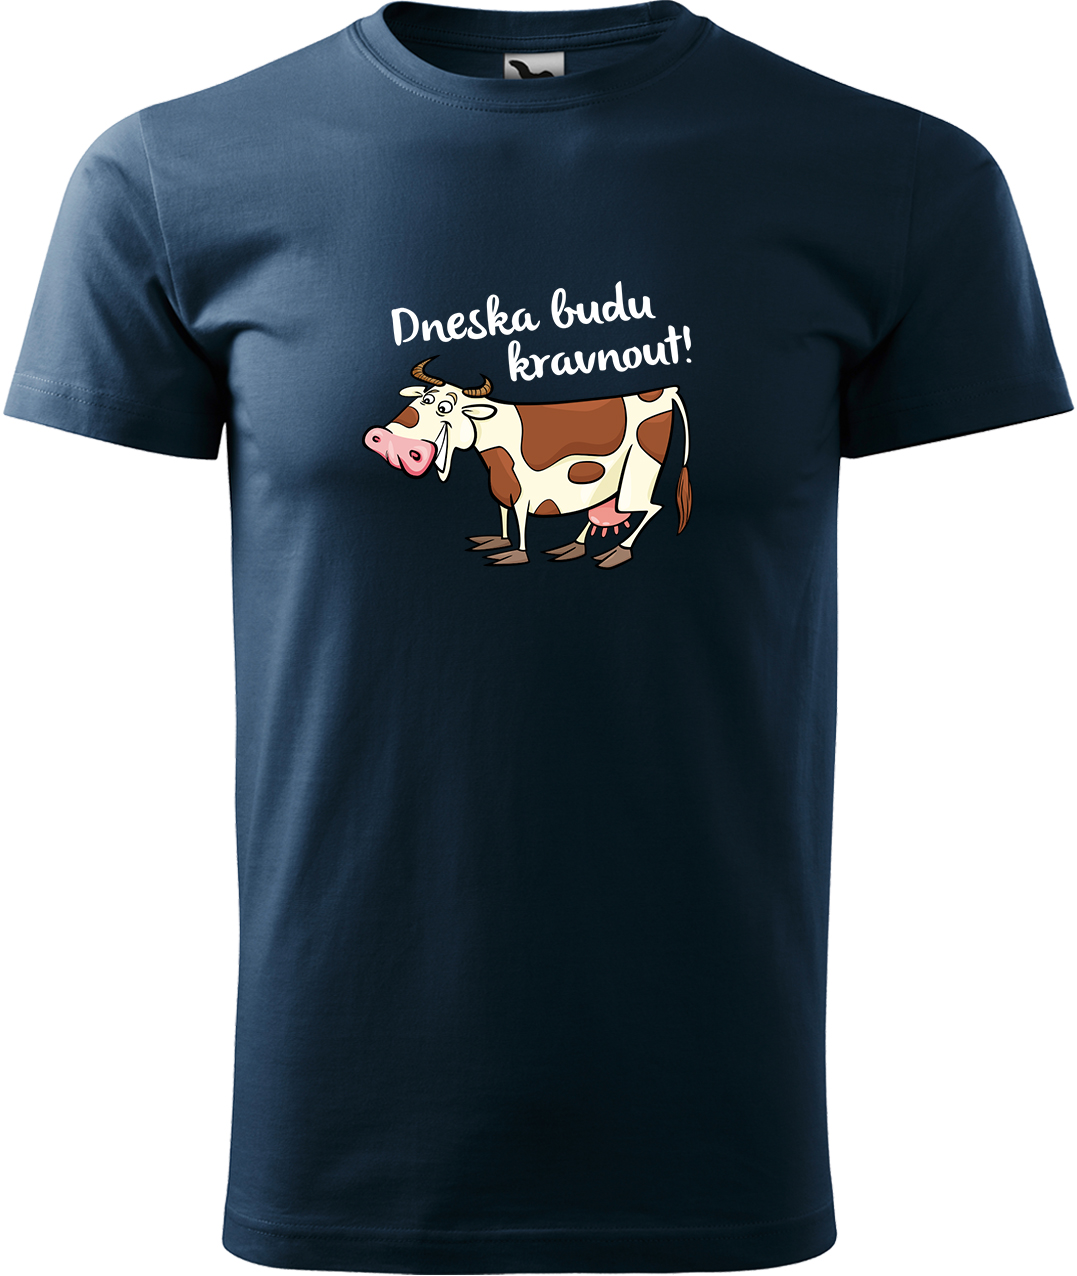 Pánské tričko s krávou - Dneska budu kravnout! Velikost: XL, Barva: Námořní modrá (02), Střih: pánský